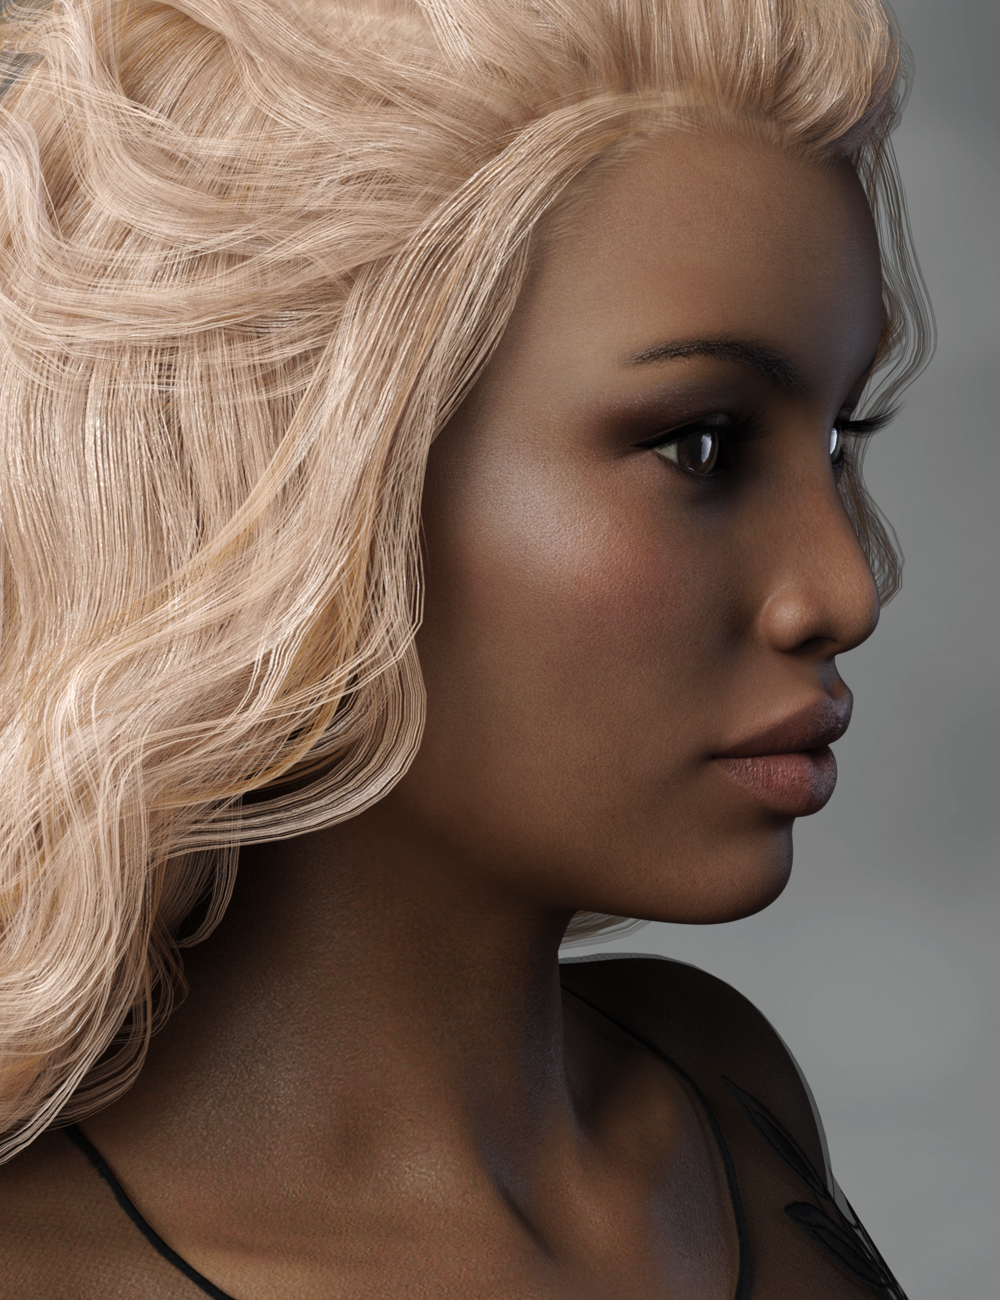 FW Tonya HD for Monique 8 by: Fred Winkler Art, 3D Models by Daz 3D